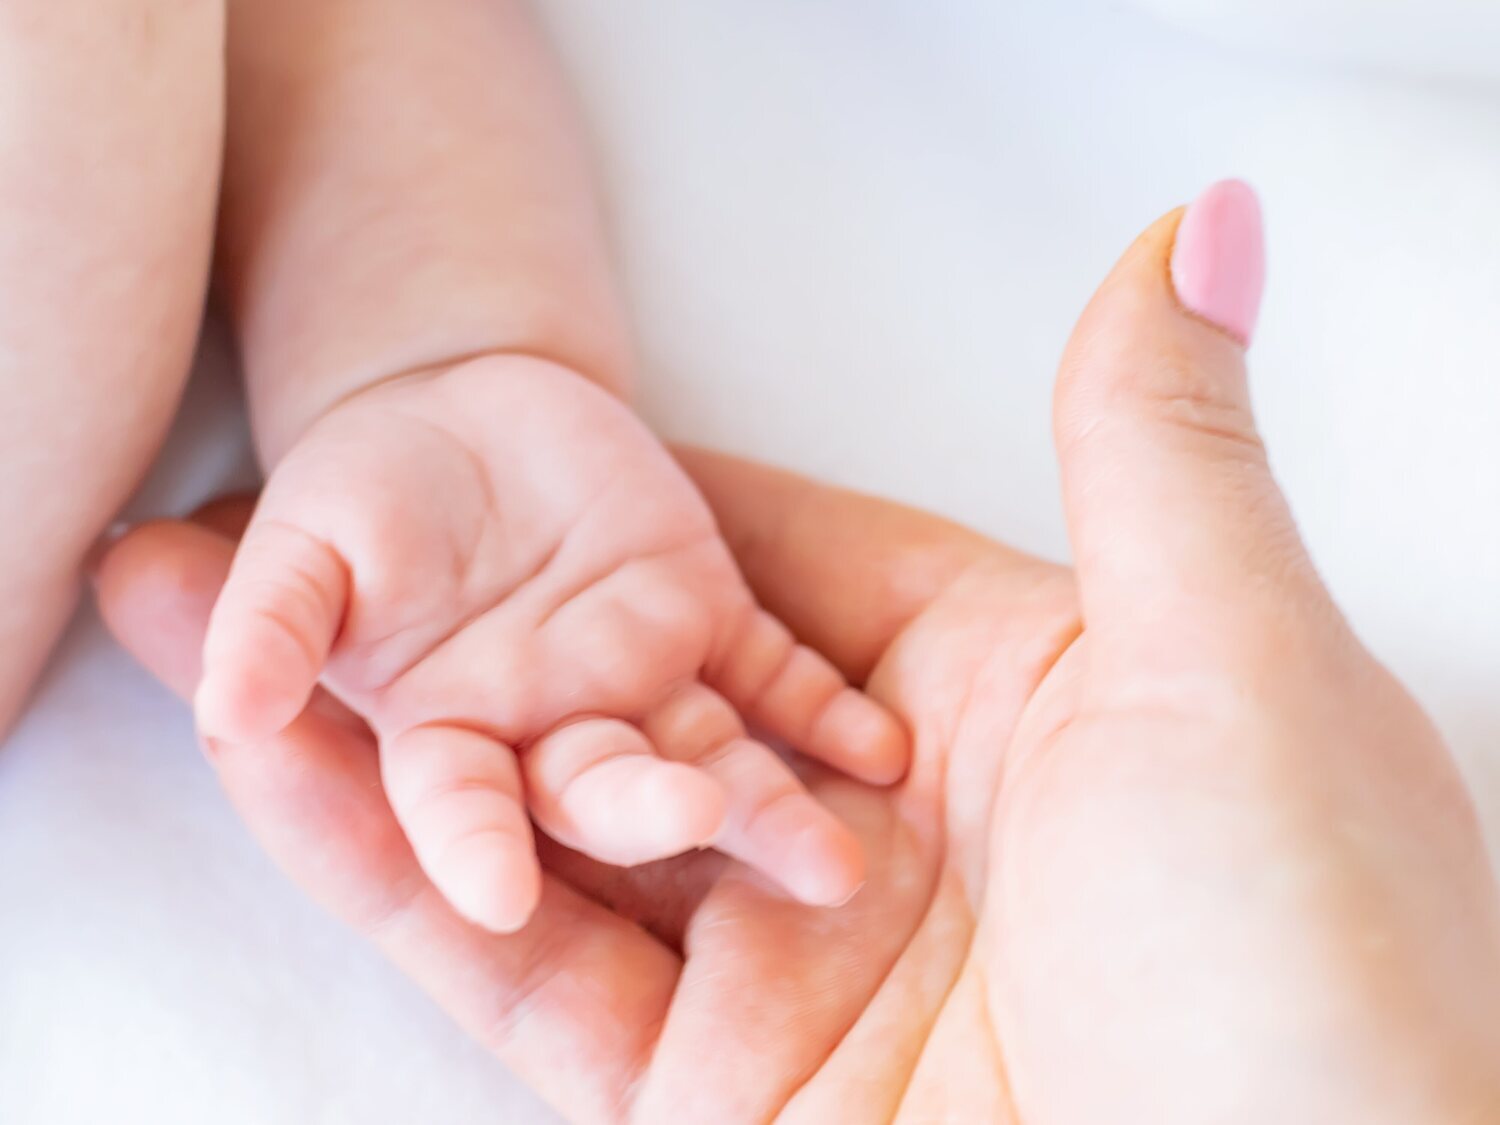 Mata a su bebé de dos meses: lo apuñala y le saca los intestinos para "sacarle al diablo"